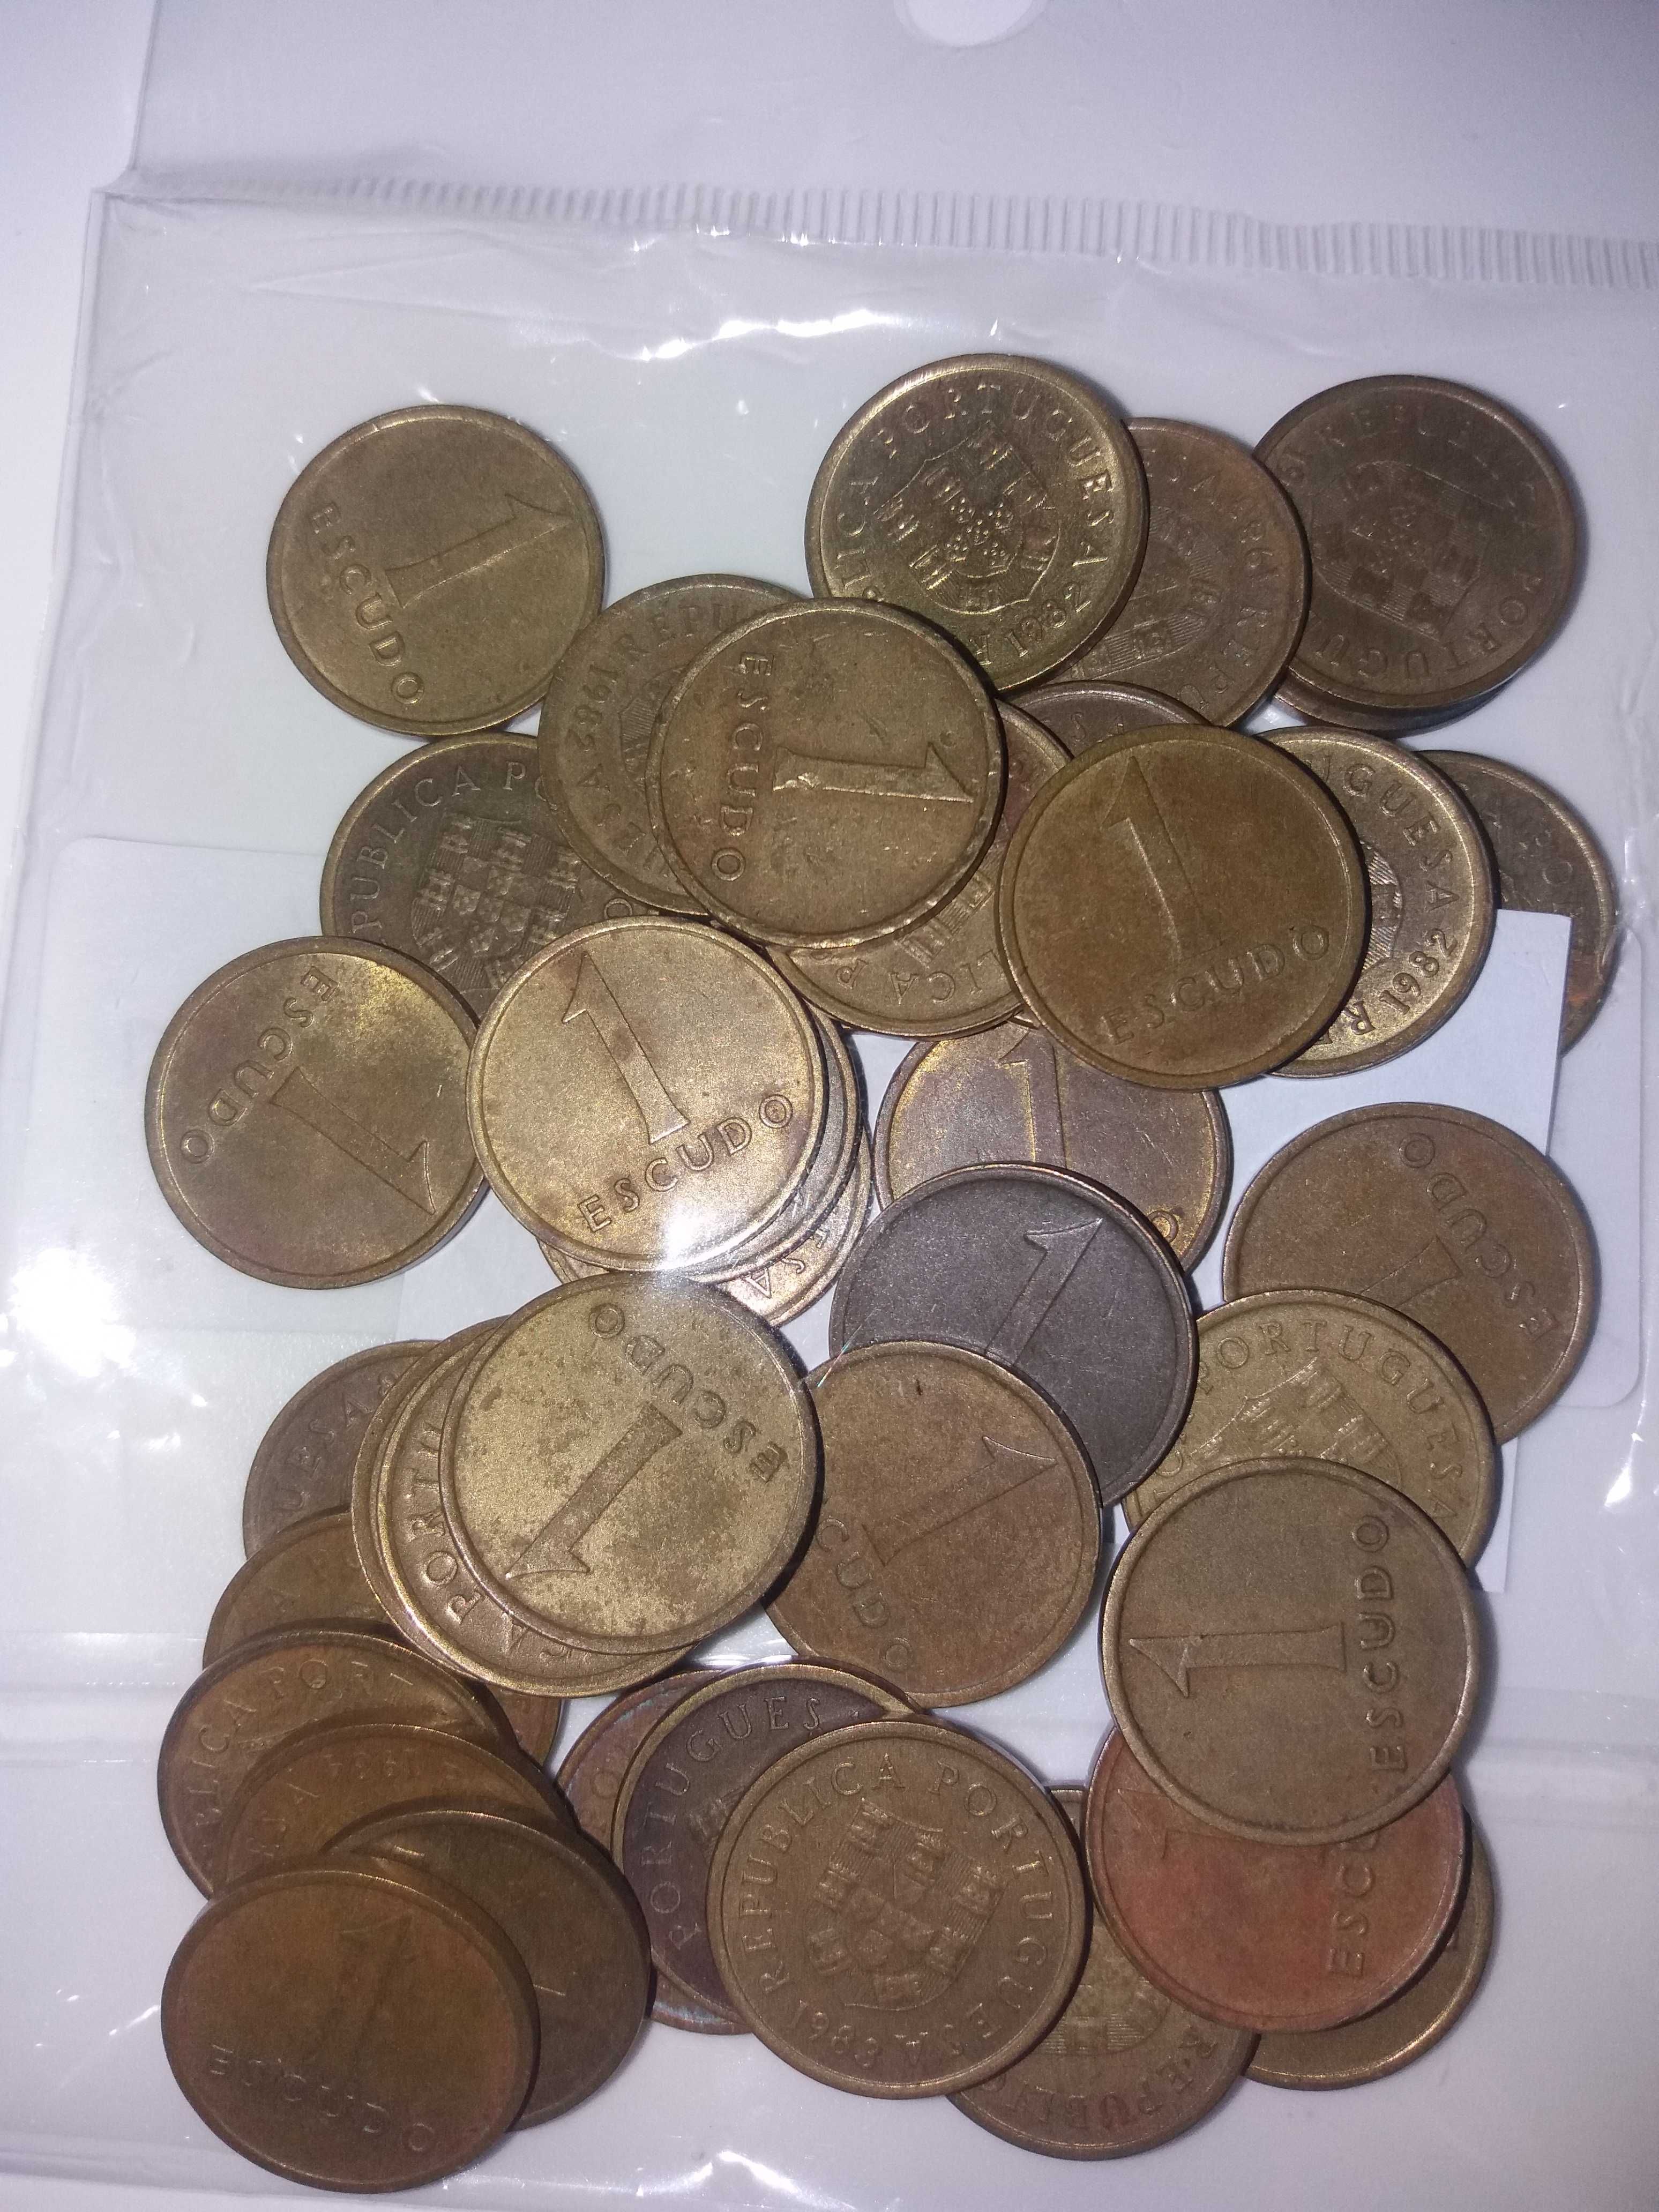 moedas e notas antigas